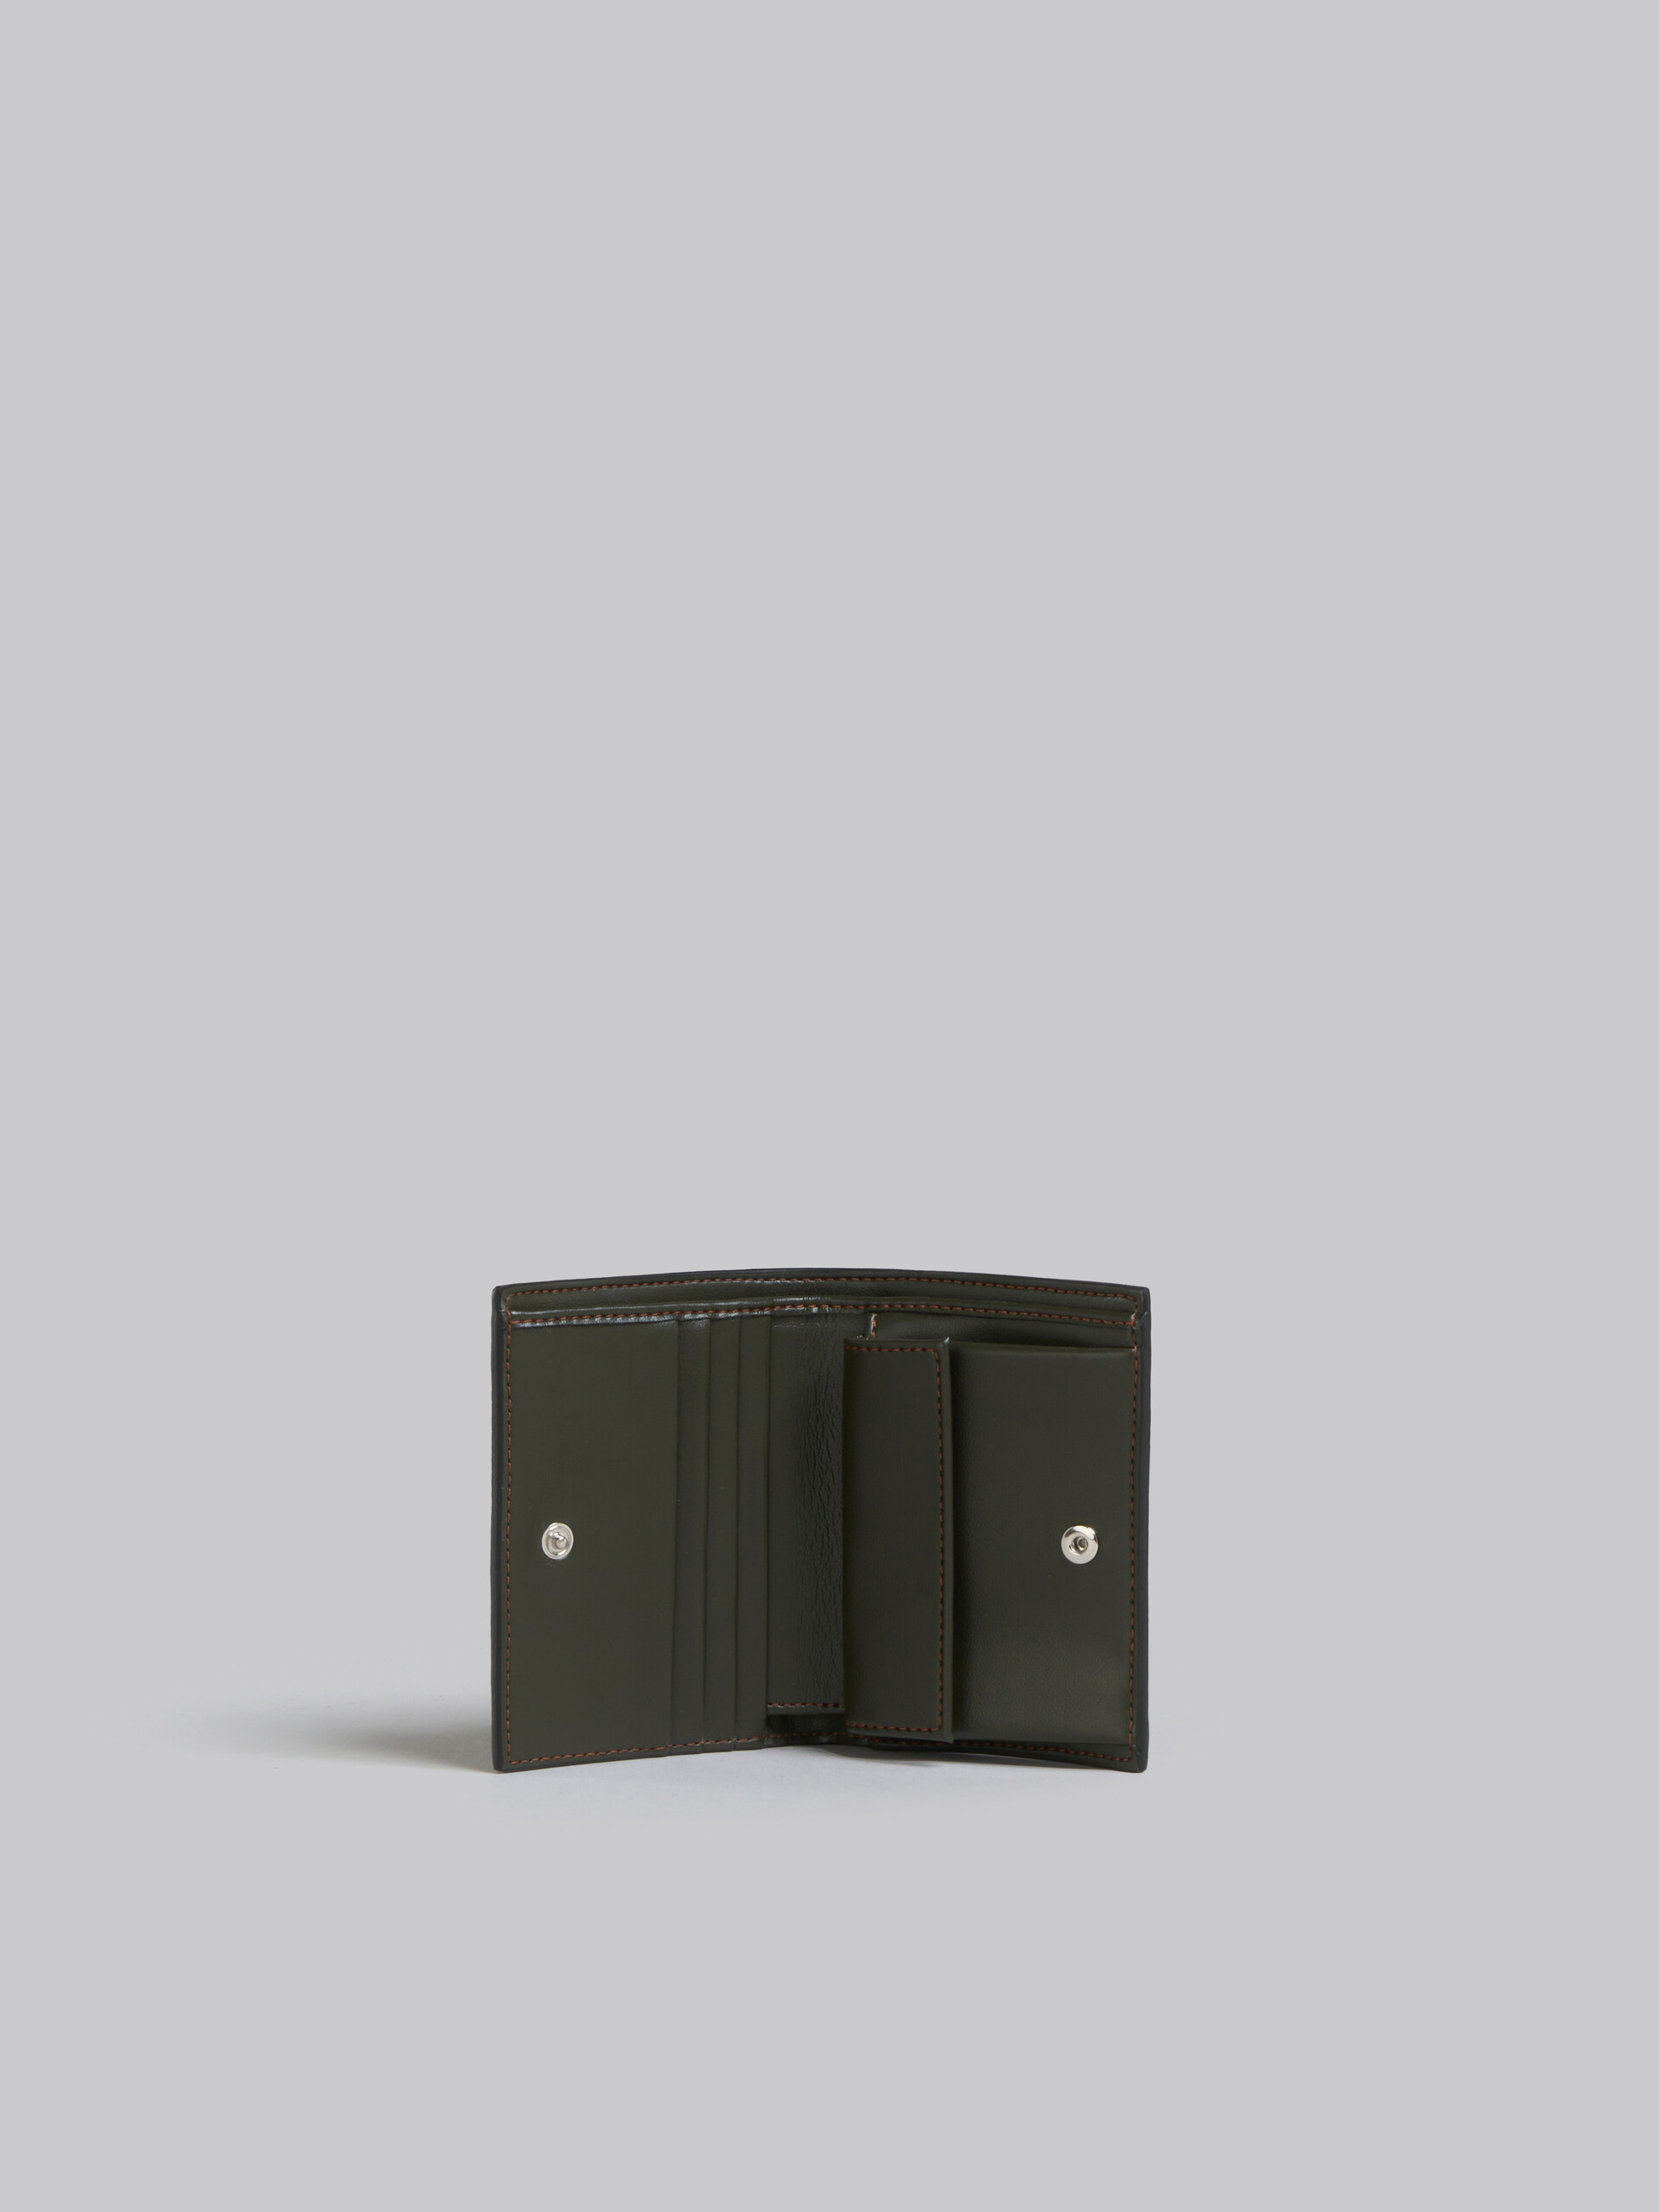 オリーブグリーン レザー製二つ折りカードケース | Marni